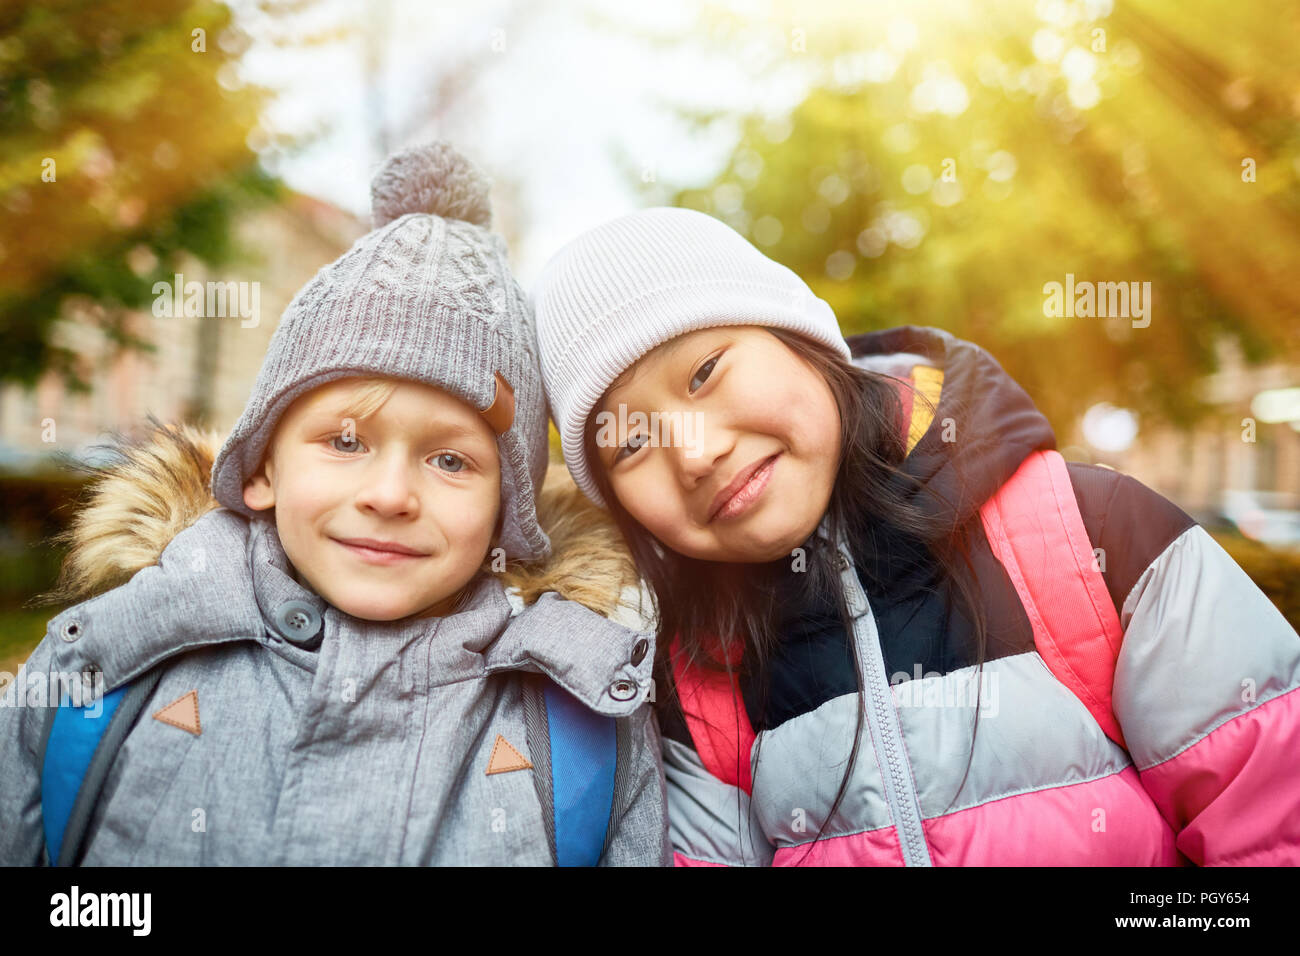 Cute interkulturelle Kinder in warmen Jacken und Mützen, die sie in der städtischen Umwelt Stockfoto